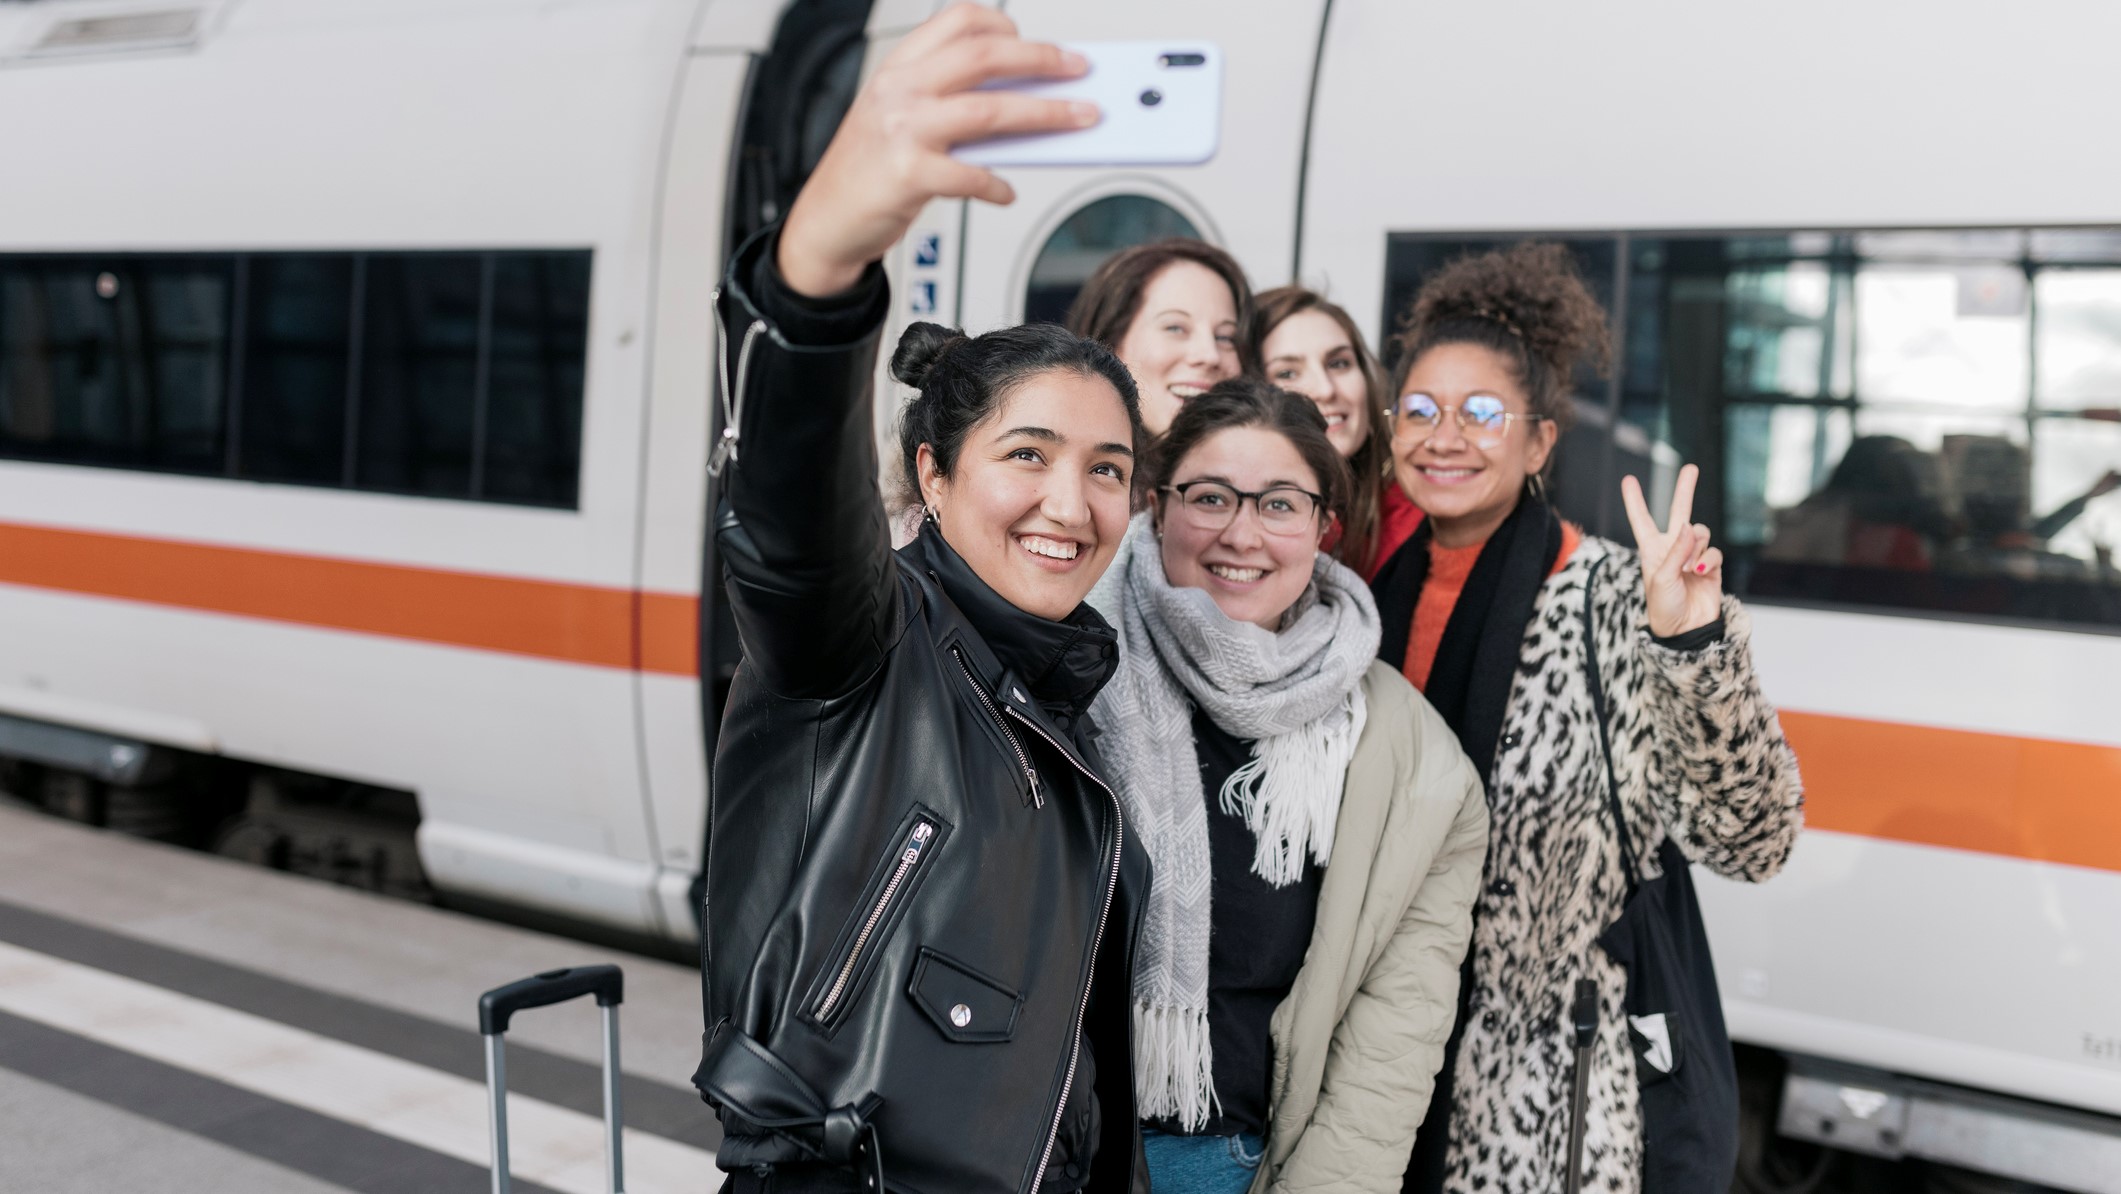 Un grupo de jóvenes haciéndose una foto antes de subir al tren.